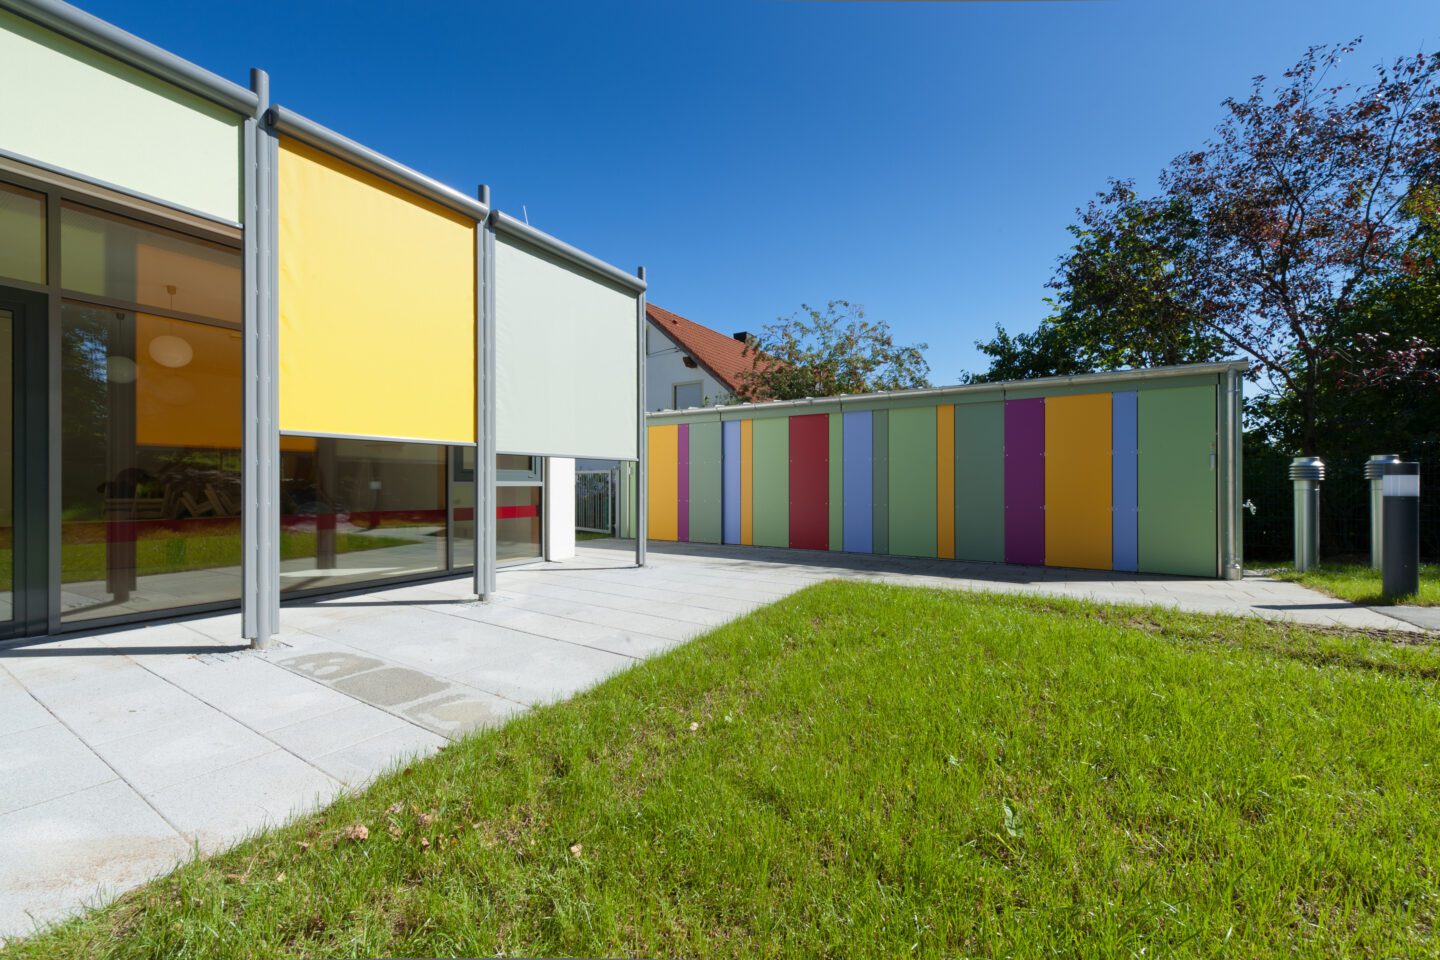 Kinderkrippe in Hettenshausen; Architektin: Rita Obereisenbuchner; Bild: Florian Schöllhorn